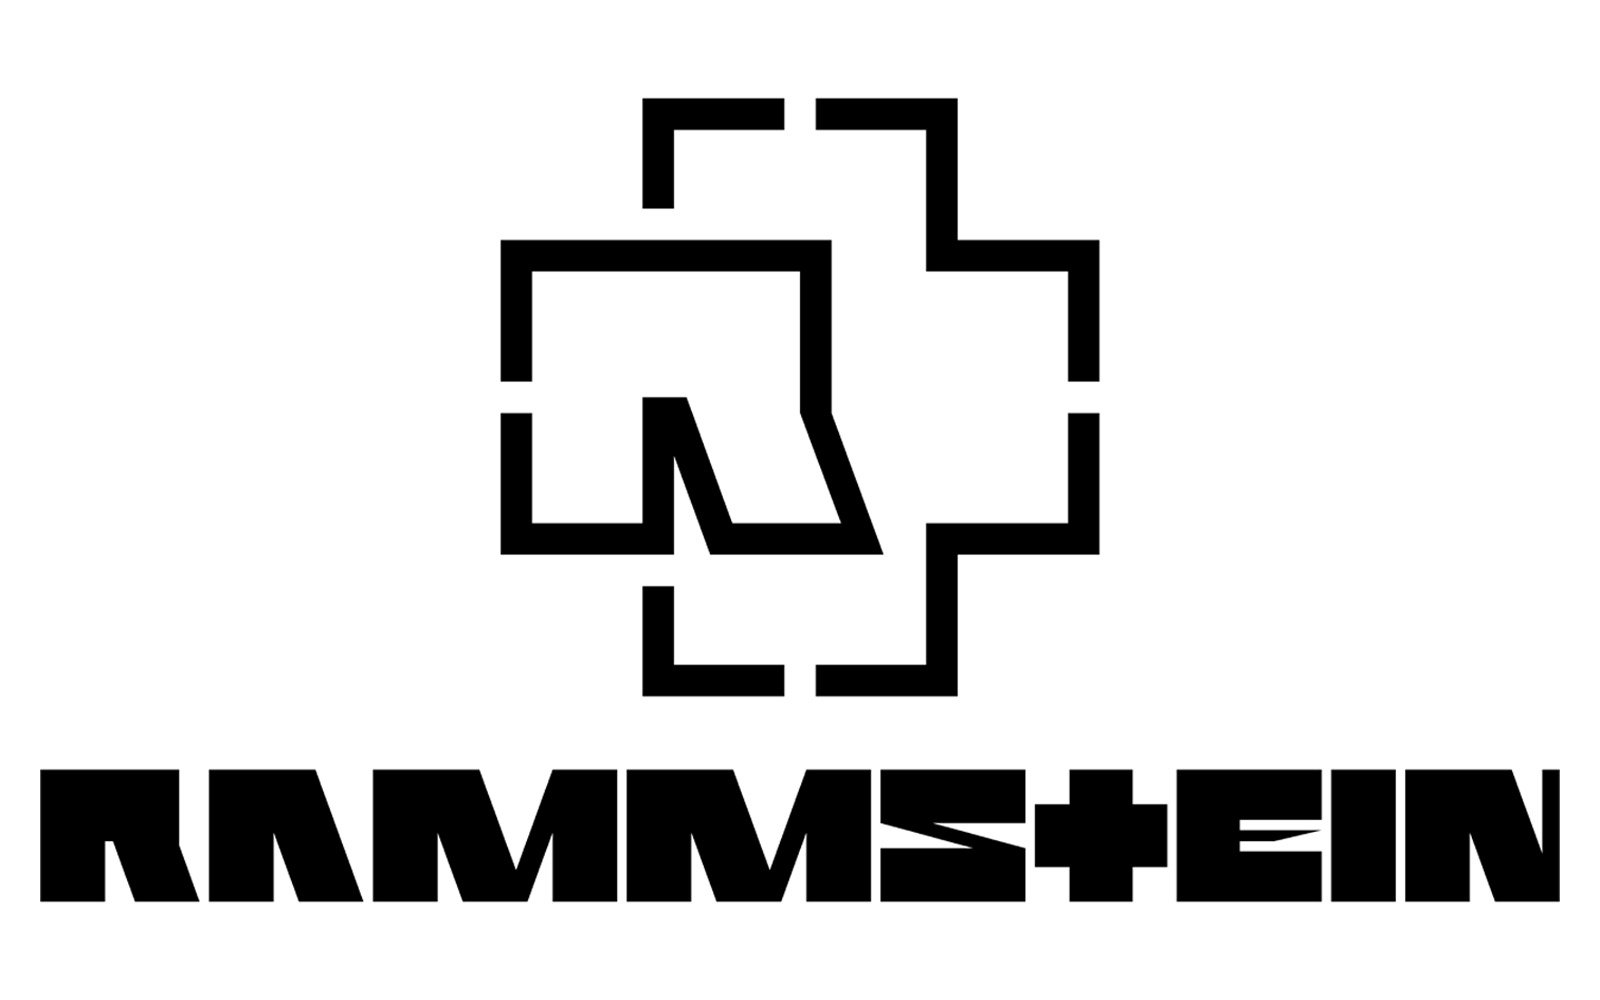 https://1000logos.net/wp-content/uploads/2020/03/Rammstein-Logo.jpg